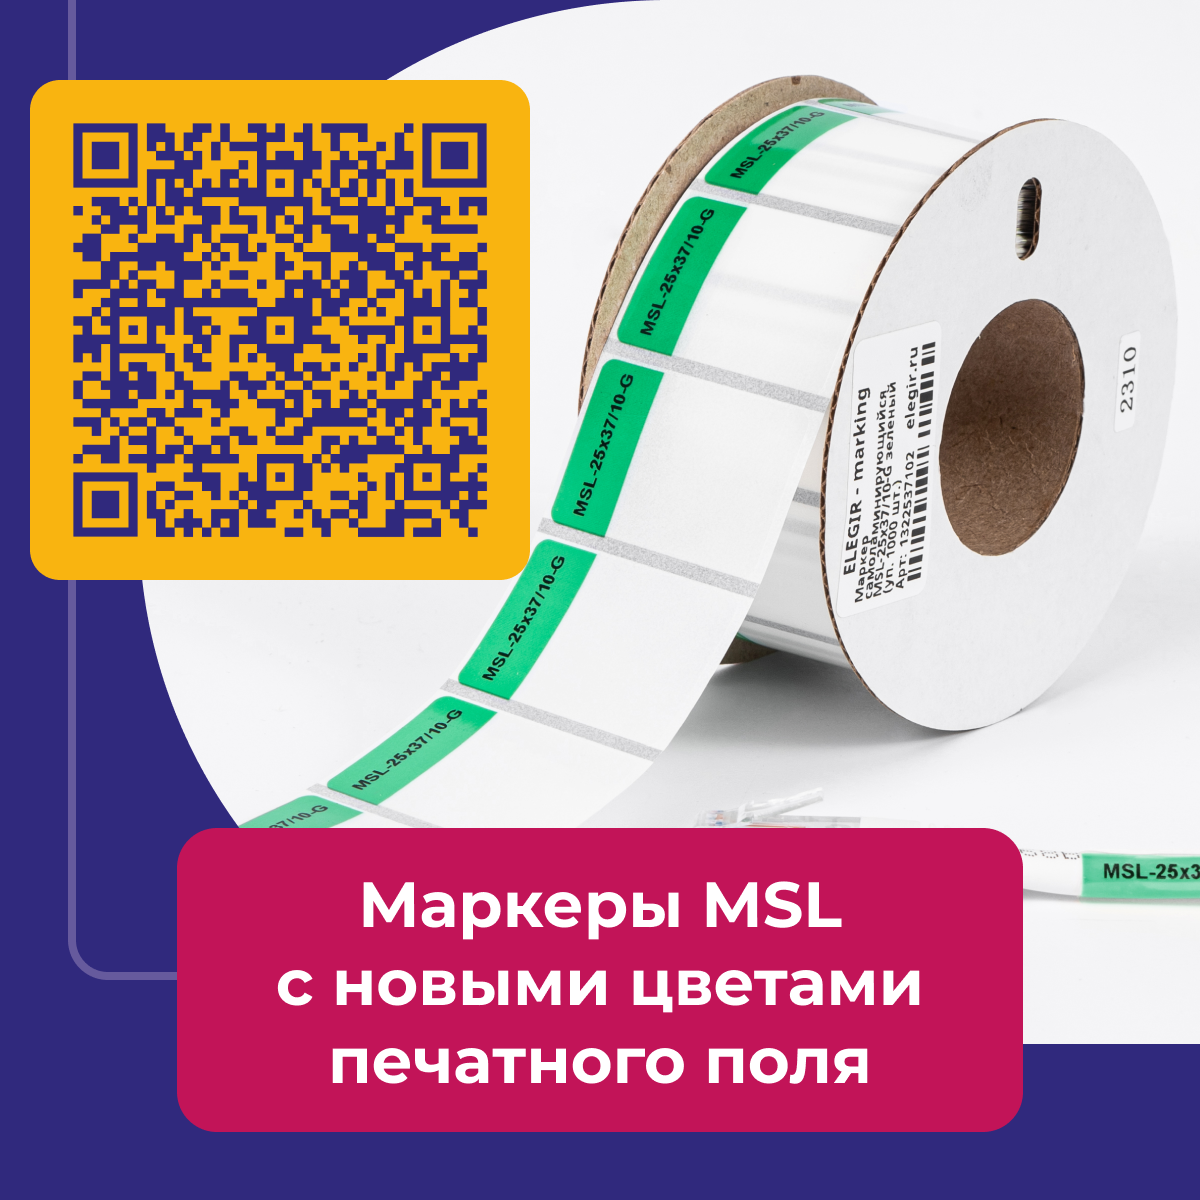 Самоламинирующиеся маркеры MSL c новыми цветами печатного поля доступны .